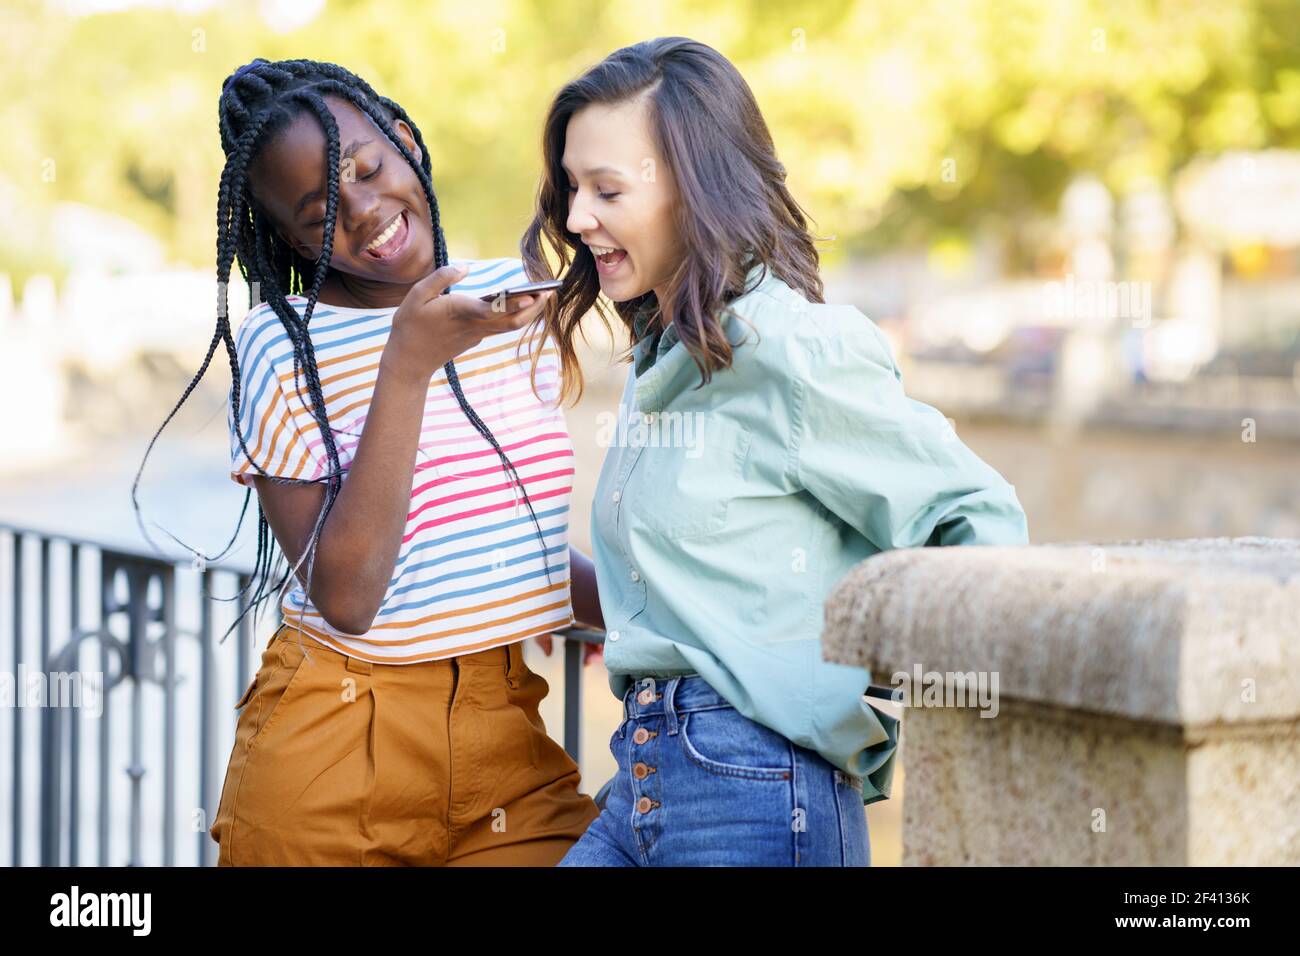 Zwei Freundinnen, die eine Sprachnotiz mit dem Smartphone im Freien aufnehmen. Multiethnische Freunde... Zwei Freundinnen, die gemeinsam auf der Straße Spaß haben. Multiethnische Freunde. Stockfoto